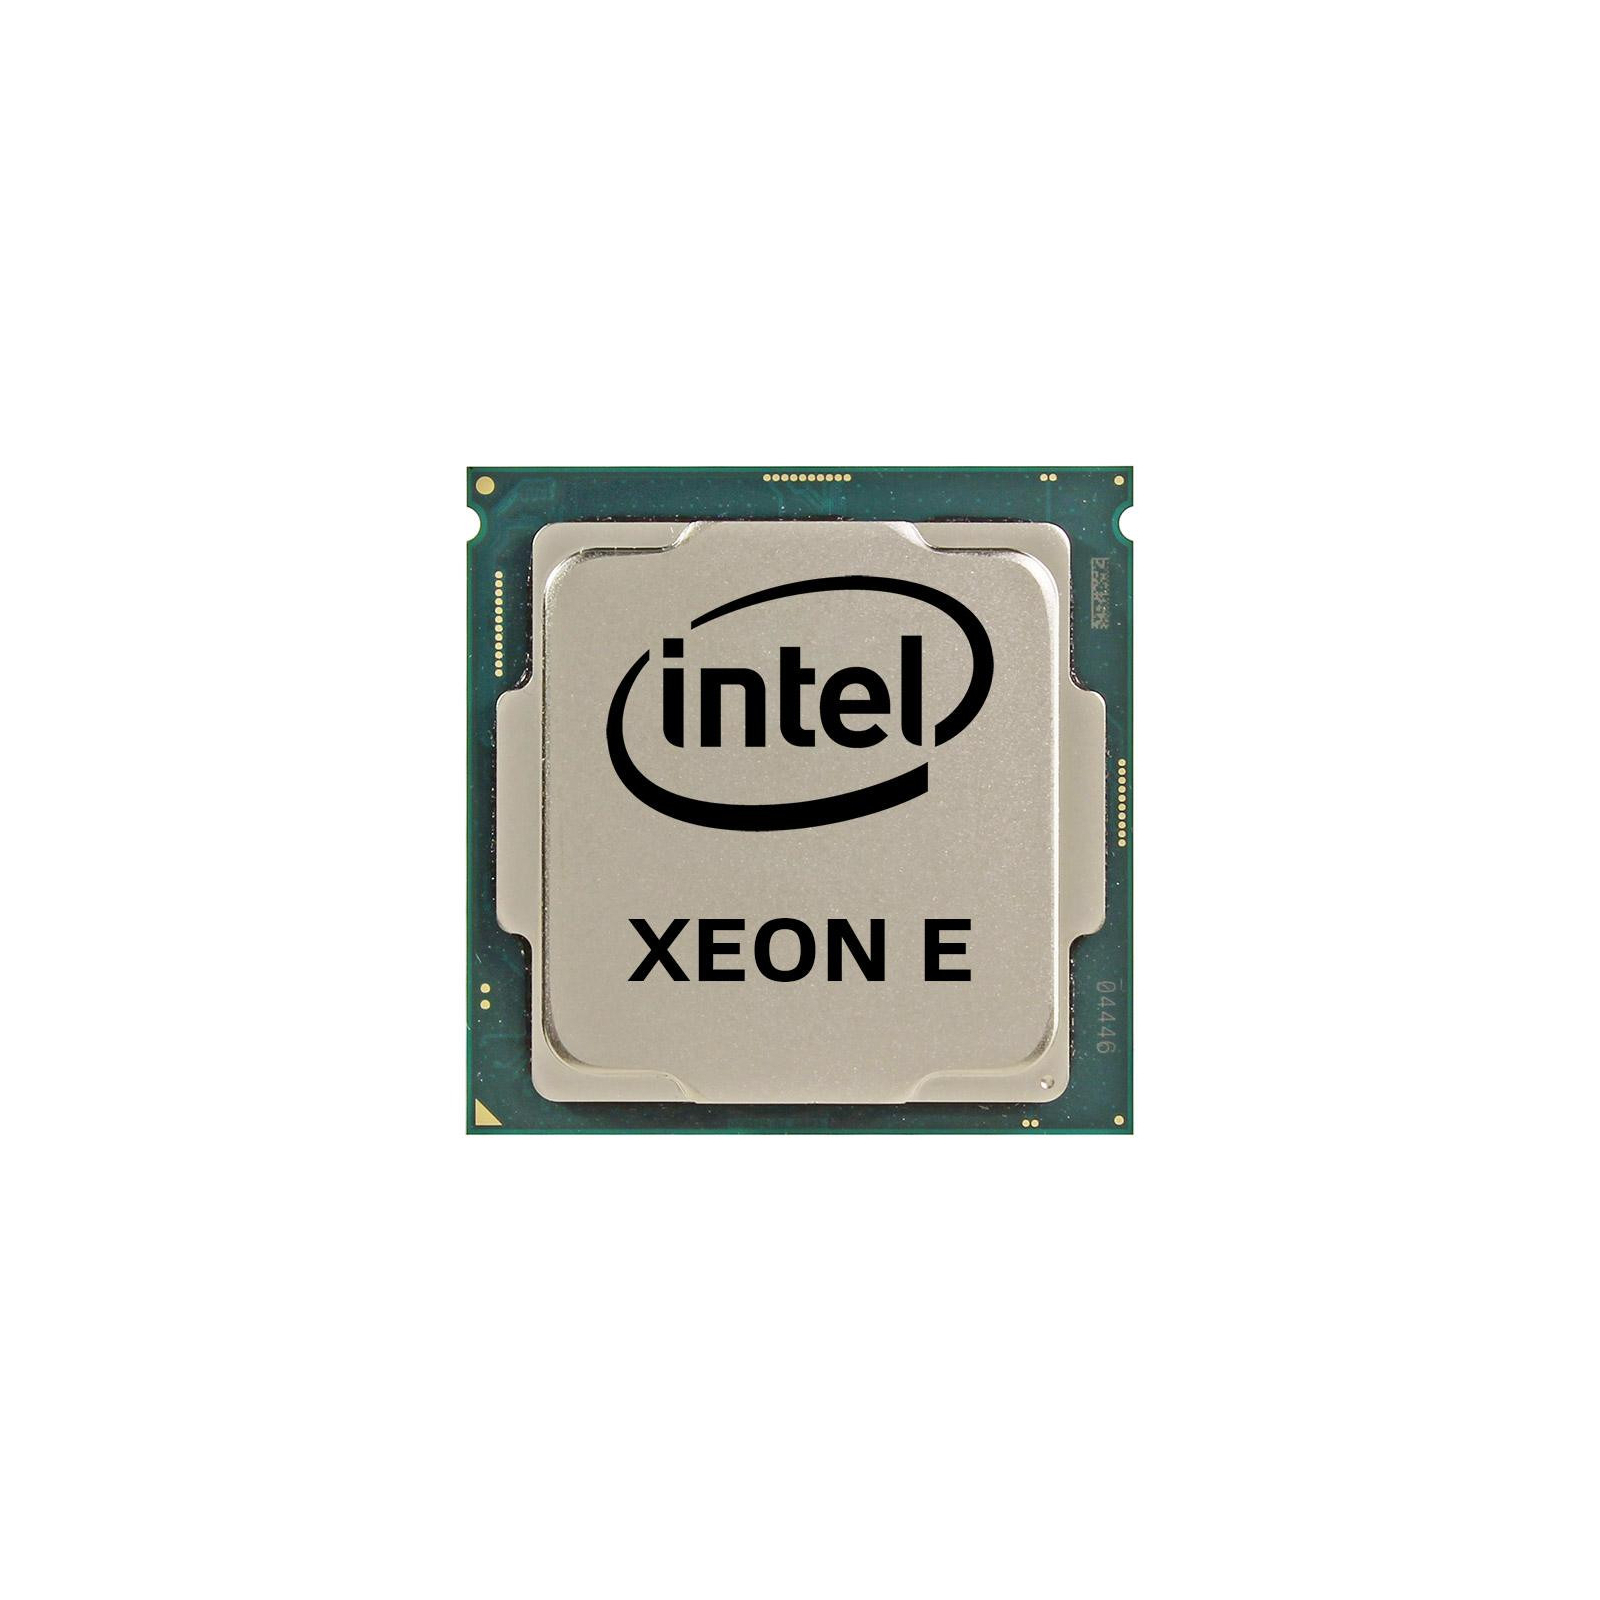 Процессор серверный INTEL Xeon E-2134 4C/8T/3.50GHz/8MB/FCLGA1151 tray (CM8068403654319 S R3WP)